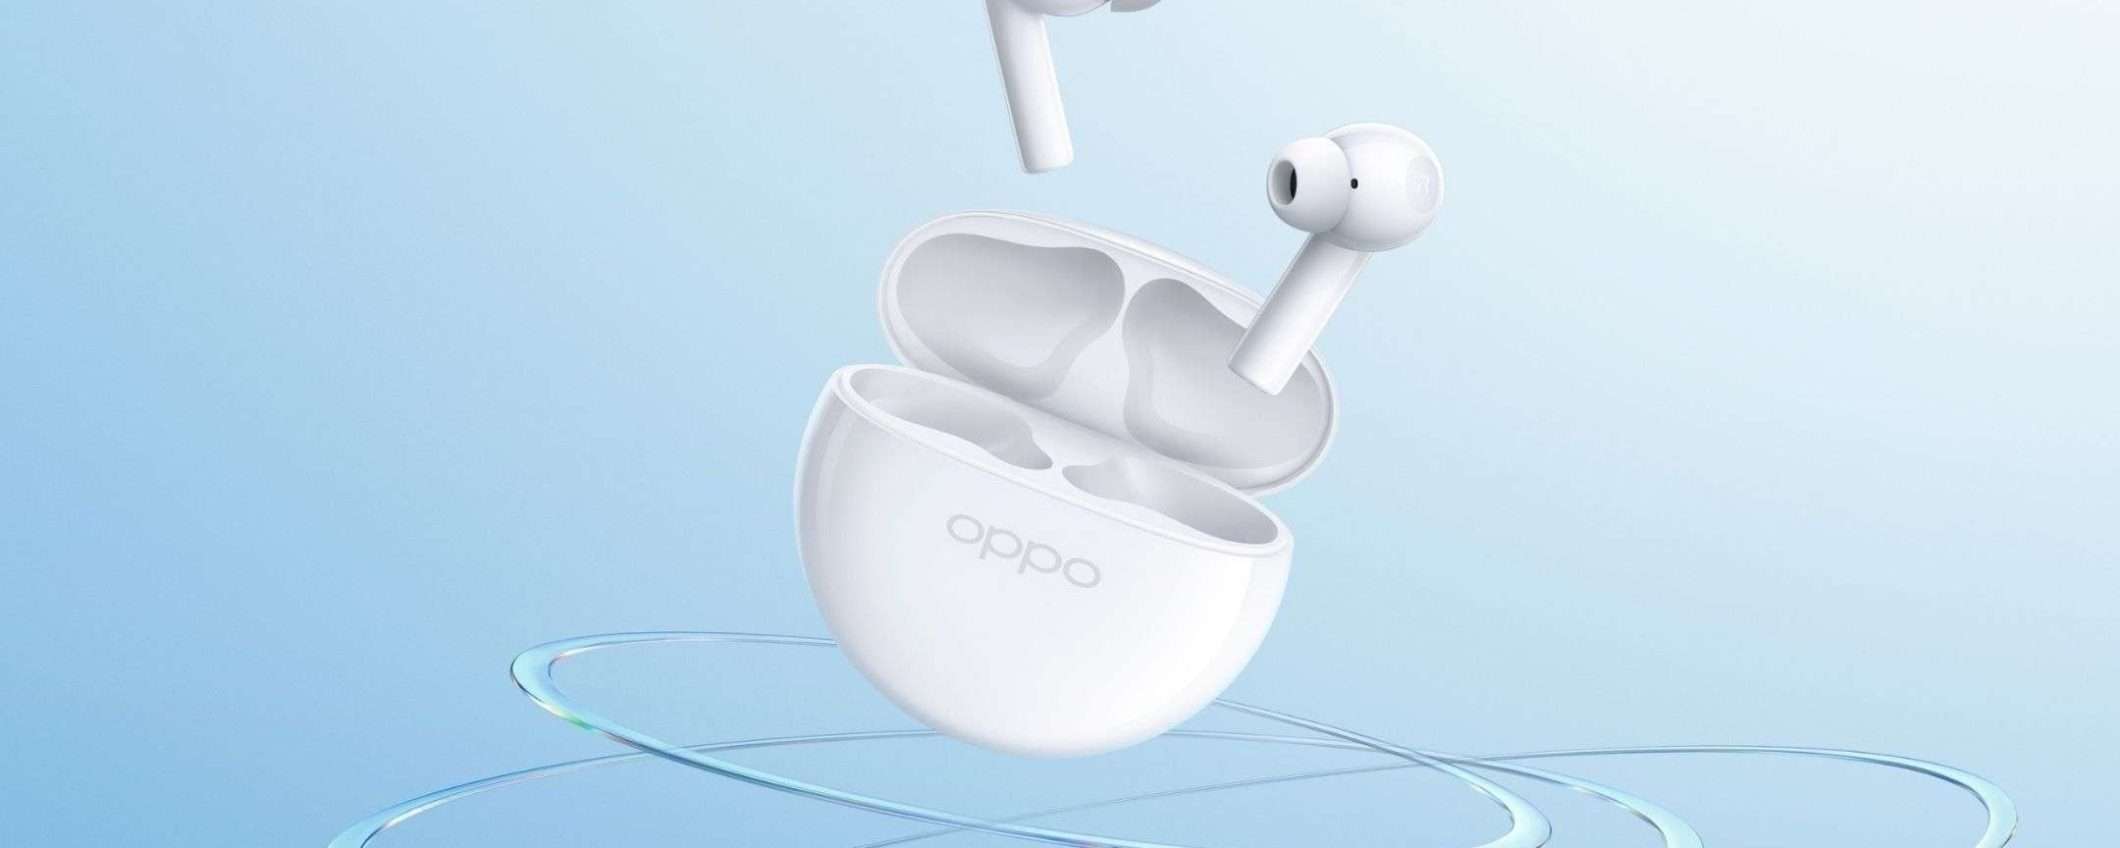 OPPO Enco Buds 2: ottimi auricolari Bluetooth a meno di 20€ su Amazon